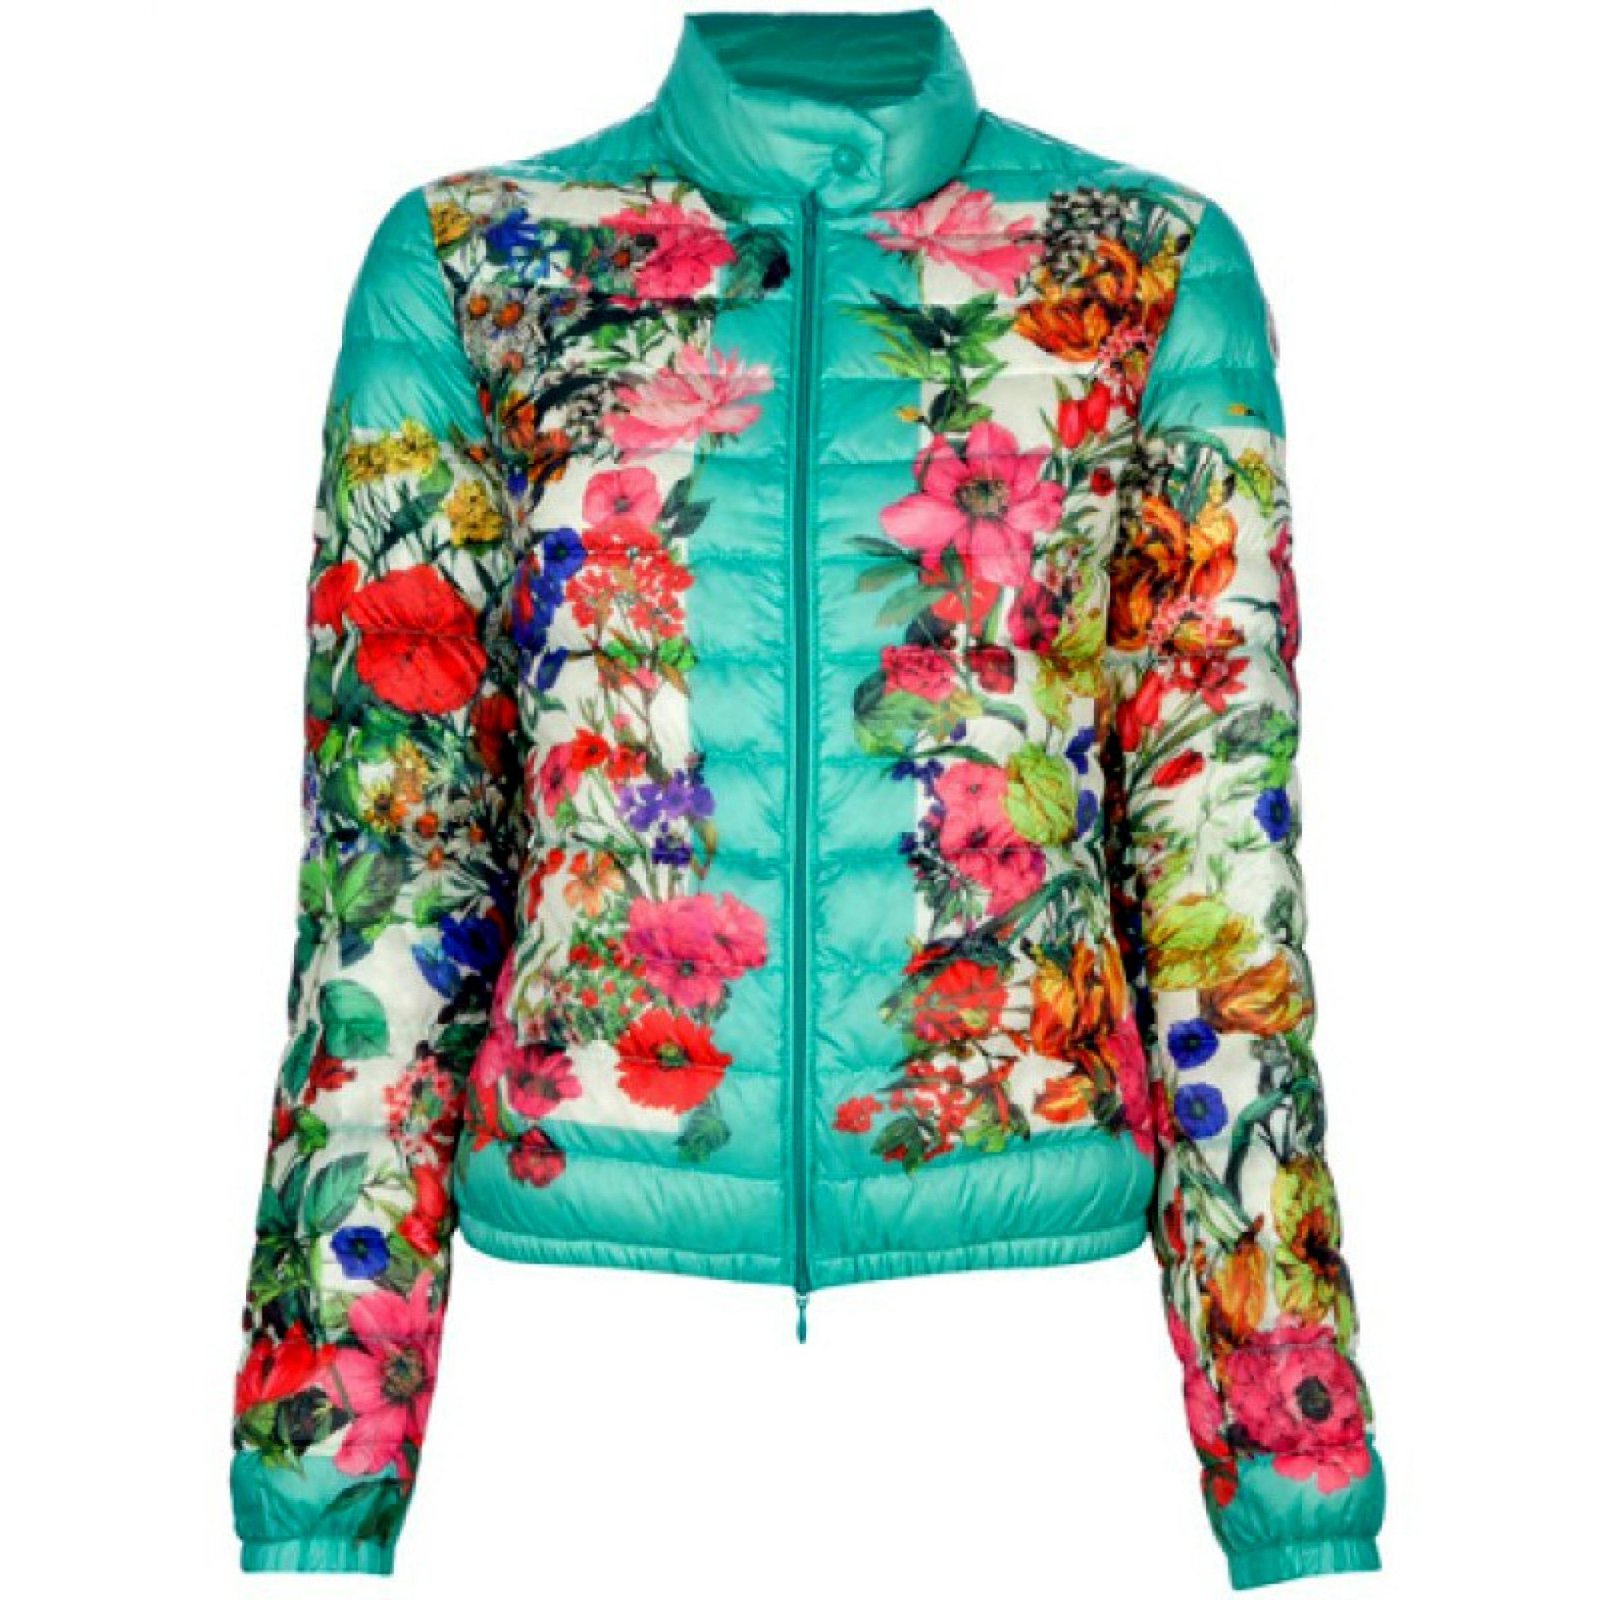 Цветные куртки купить. Женская куртка монклер принт. Куртка монклер цветы. Монклер куртка с цветами. Монклер куртка с цветочным принтом.